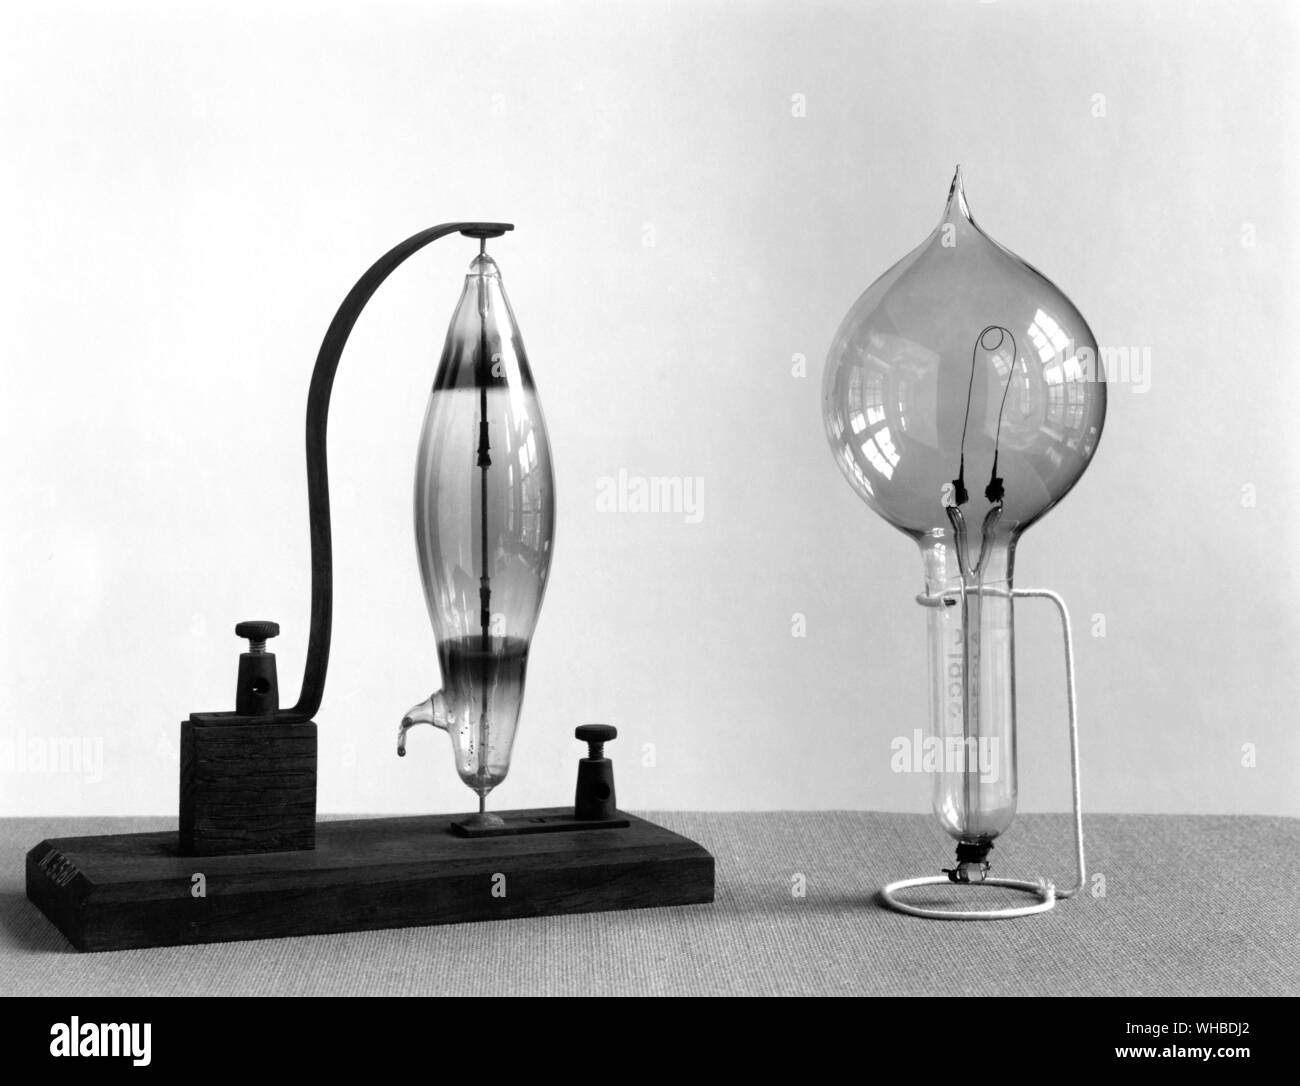 Swan sperimentale matita di carbonio lampada 1878-9 - due primi tipi commerciali di lampada c.1880 - fatta dal chimico inglese Joseph Swan (1827-1914). Questa lampada è un inizio di carbonio e asta filamento incandescente lampada elettrica. . Foto Stock